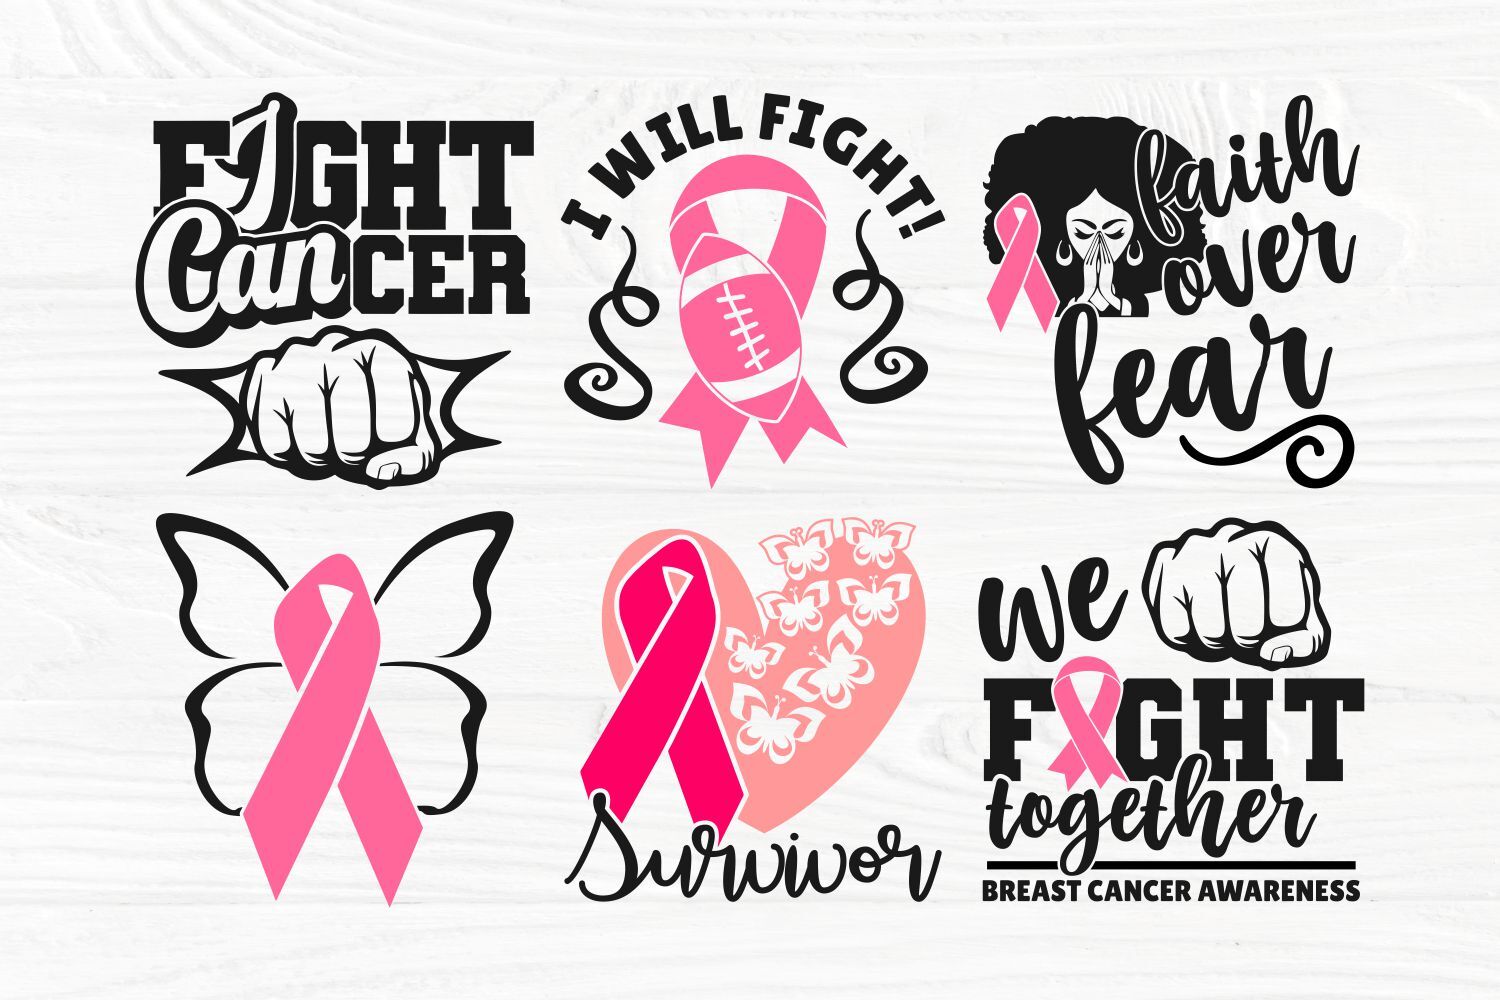 Together We Fight Svg File Cancer Awareness Svg Breastcancer